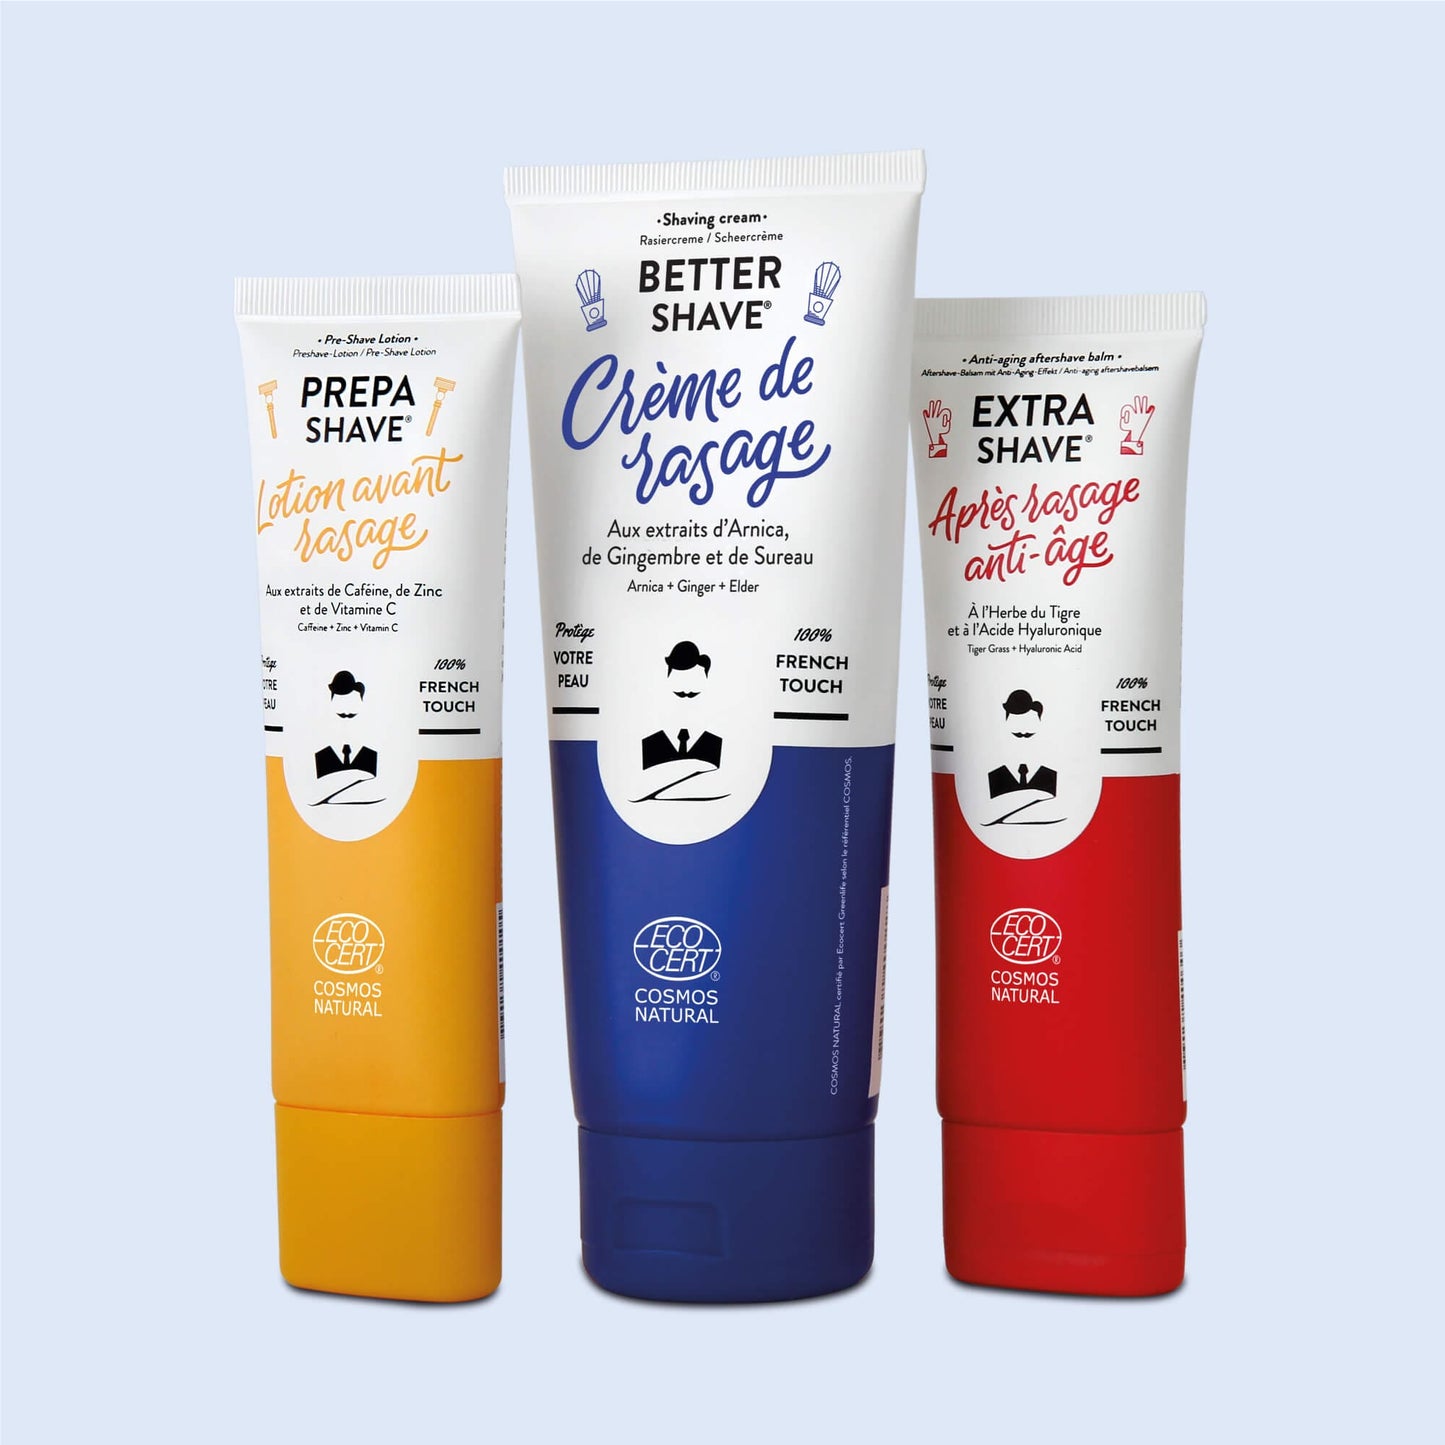 Gamme de soins de rasage de Monsieur BARBIER incluant une crème à raser, une lotion avant-rasage et un après-rasage anti-âge, emballés dans des tubes colorés en jaune, bleu et rouge.